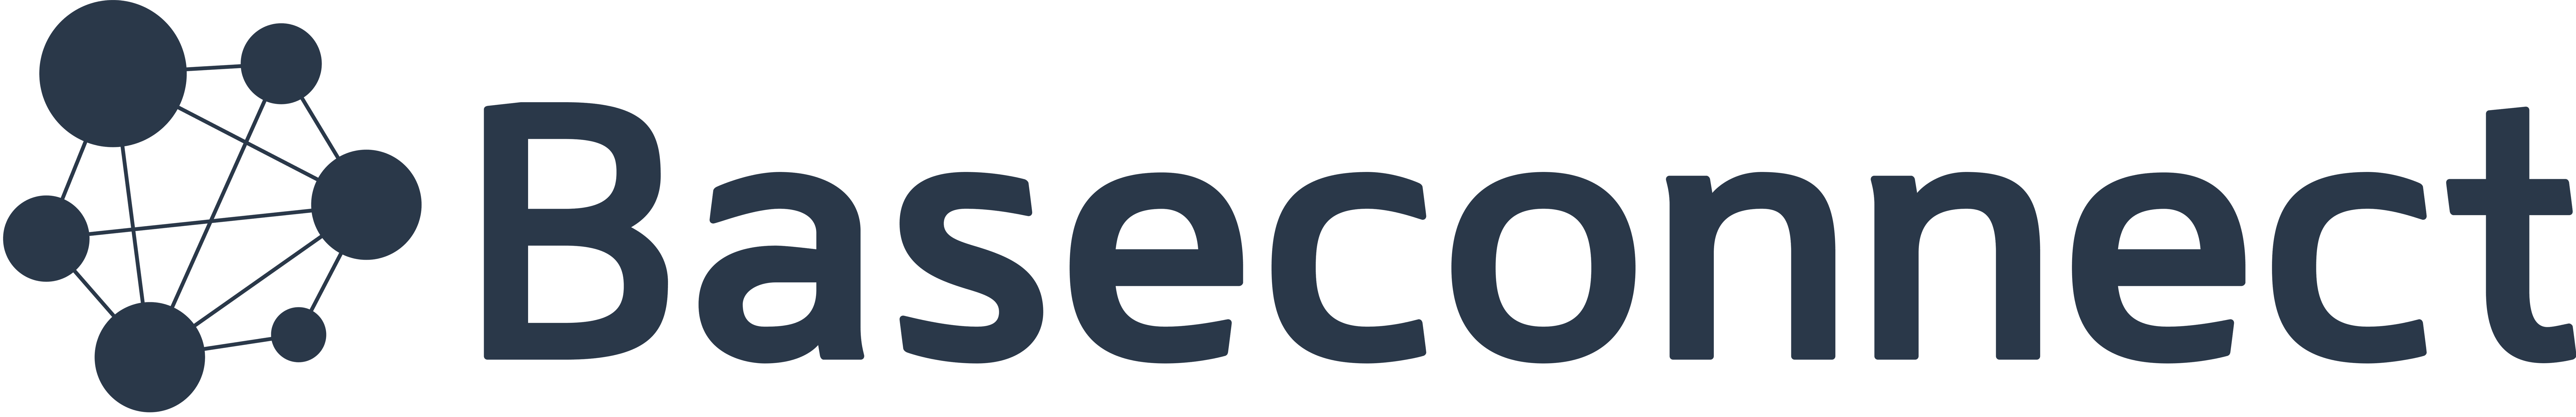 Baseconnect株式会社